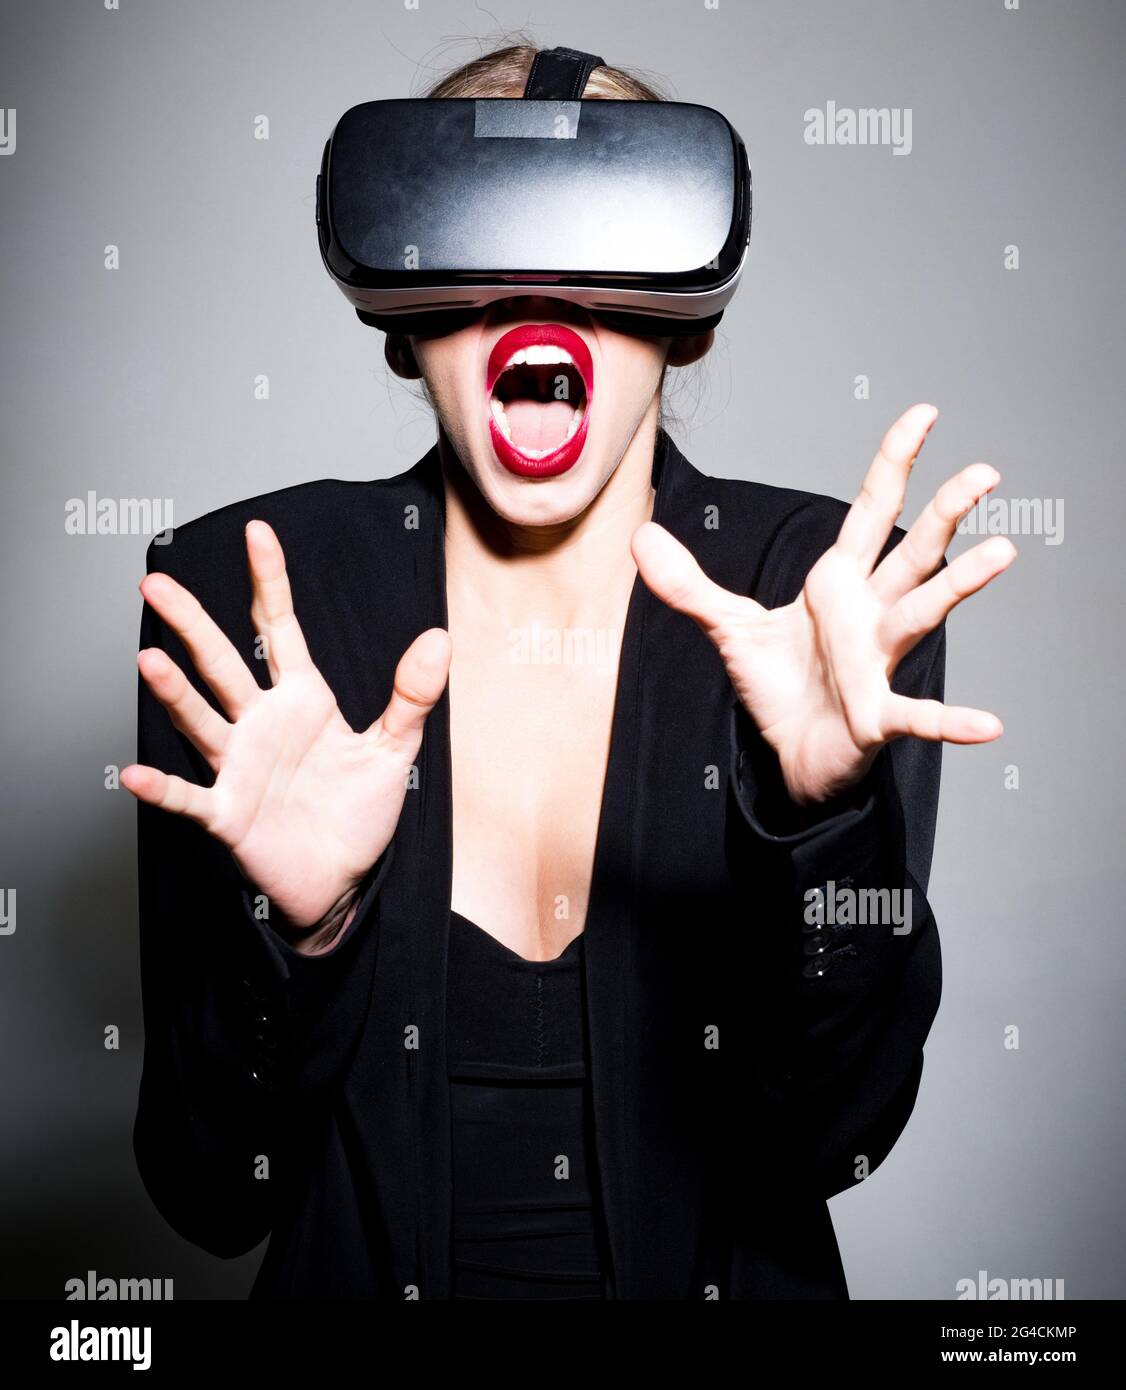 Verängstigte Frau mit Virtual-Reality-Gerät. Schönes Mädchen in VR-Brille. Entertainment und innovatives Technologiekonzept. Stockfoto